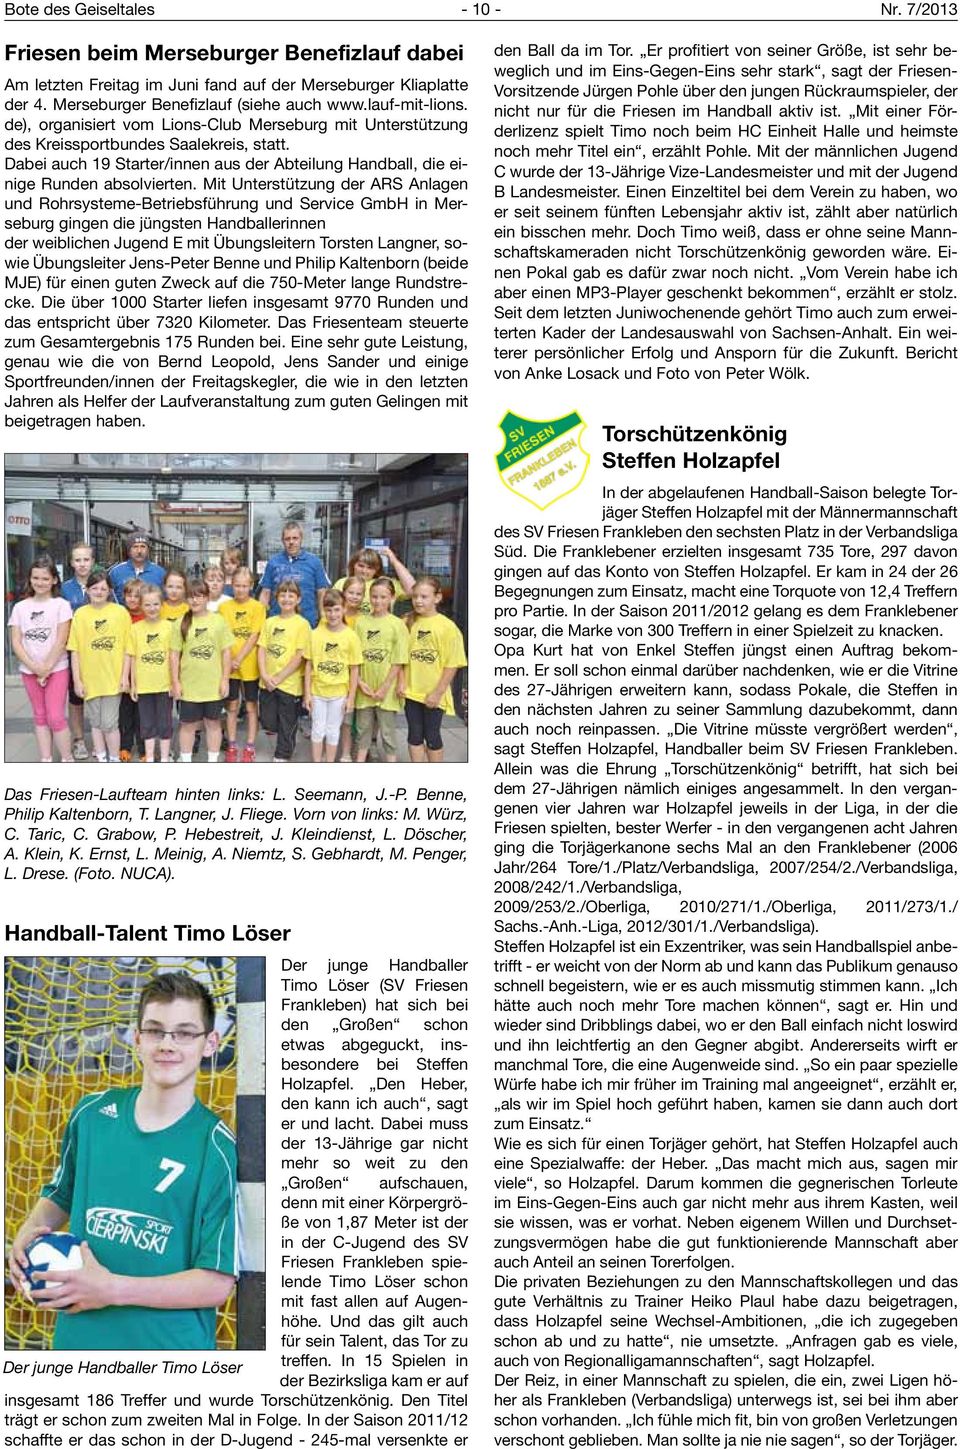 Mit Unterstützung der ARS Anlagen und Rohrsysteme-Betriebsführung und Service GmbH in Merseburg gingen die jüngsten Handballerinnen der weiblichen Jugend E mit Übungsleitern Torsten Langner, sowie